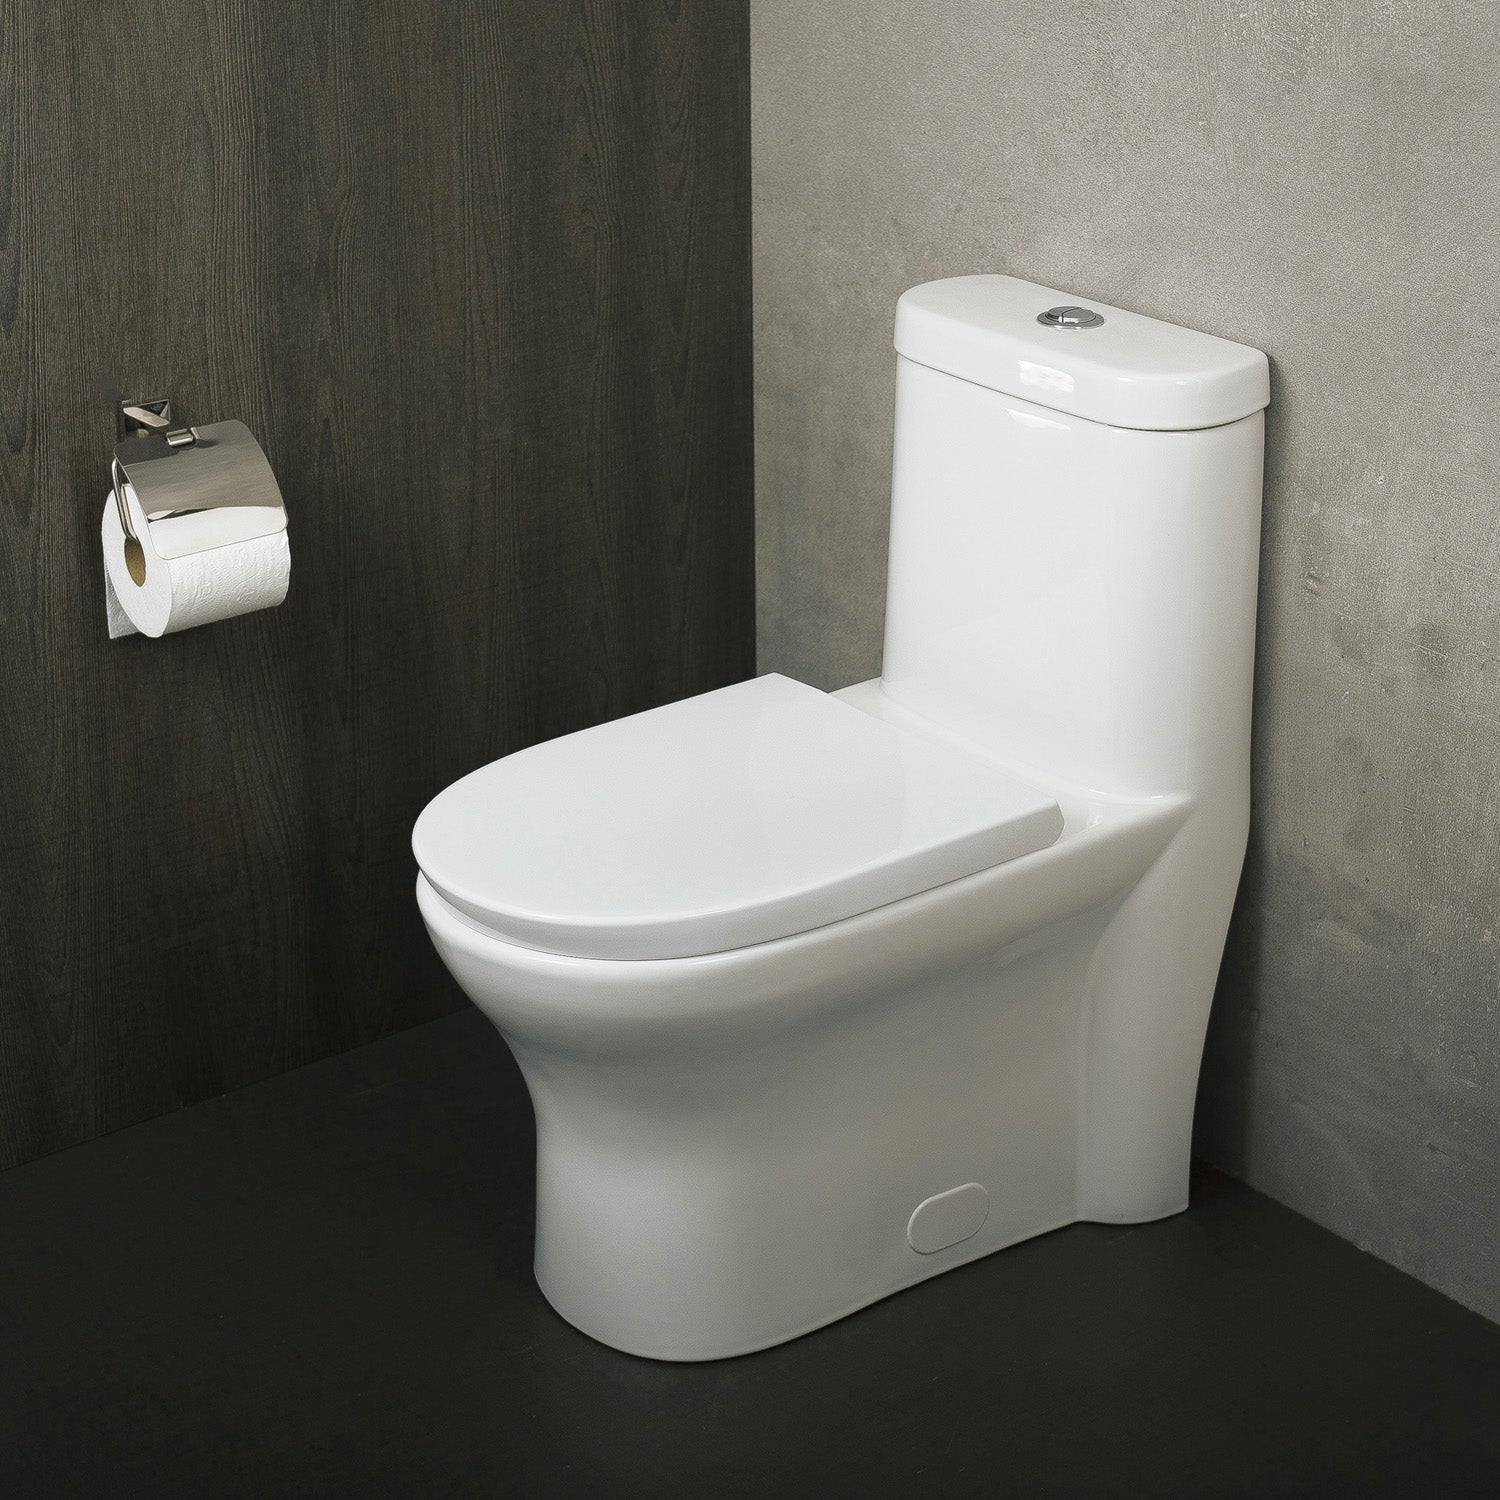 DAX Inodoro ovalado de una pieza con asiento de cierre suave y doble descarga de alta eficiencia, porcelana, acabado blanco, altura 29-1/2 pulgadas (BSN-832)